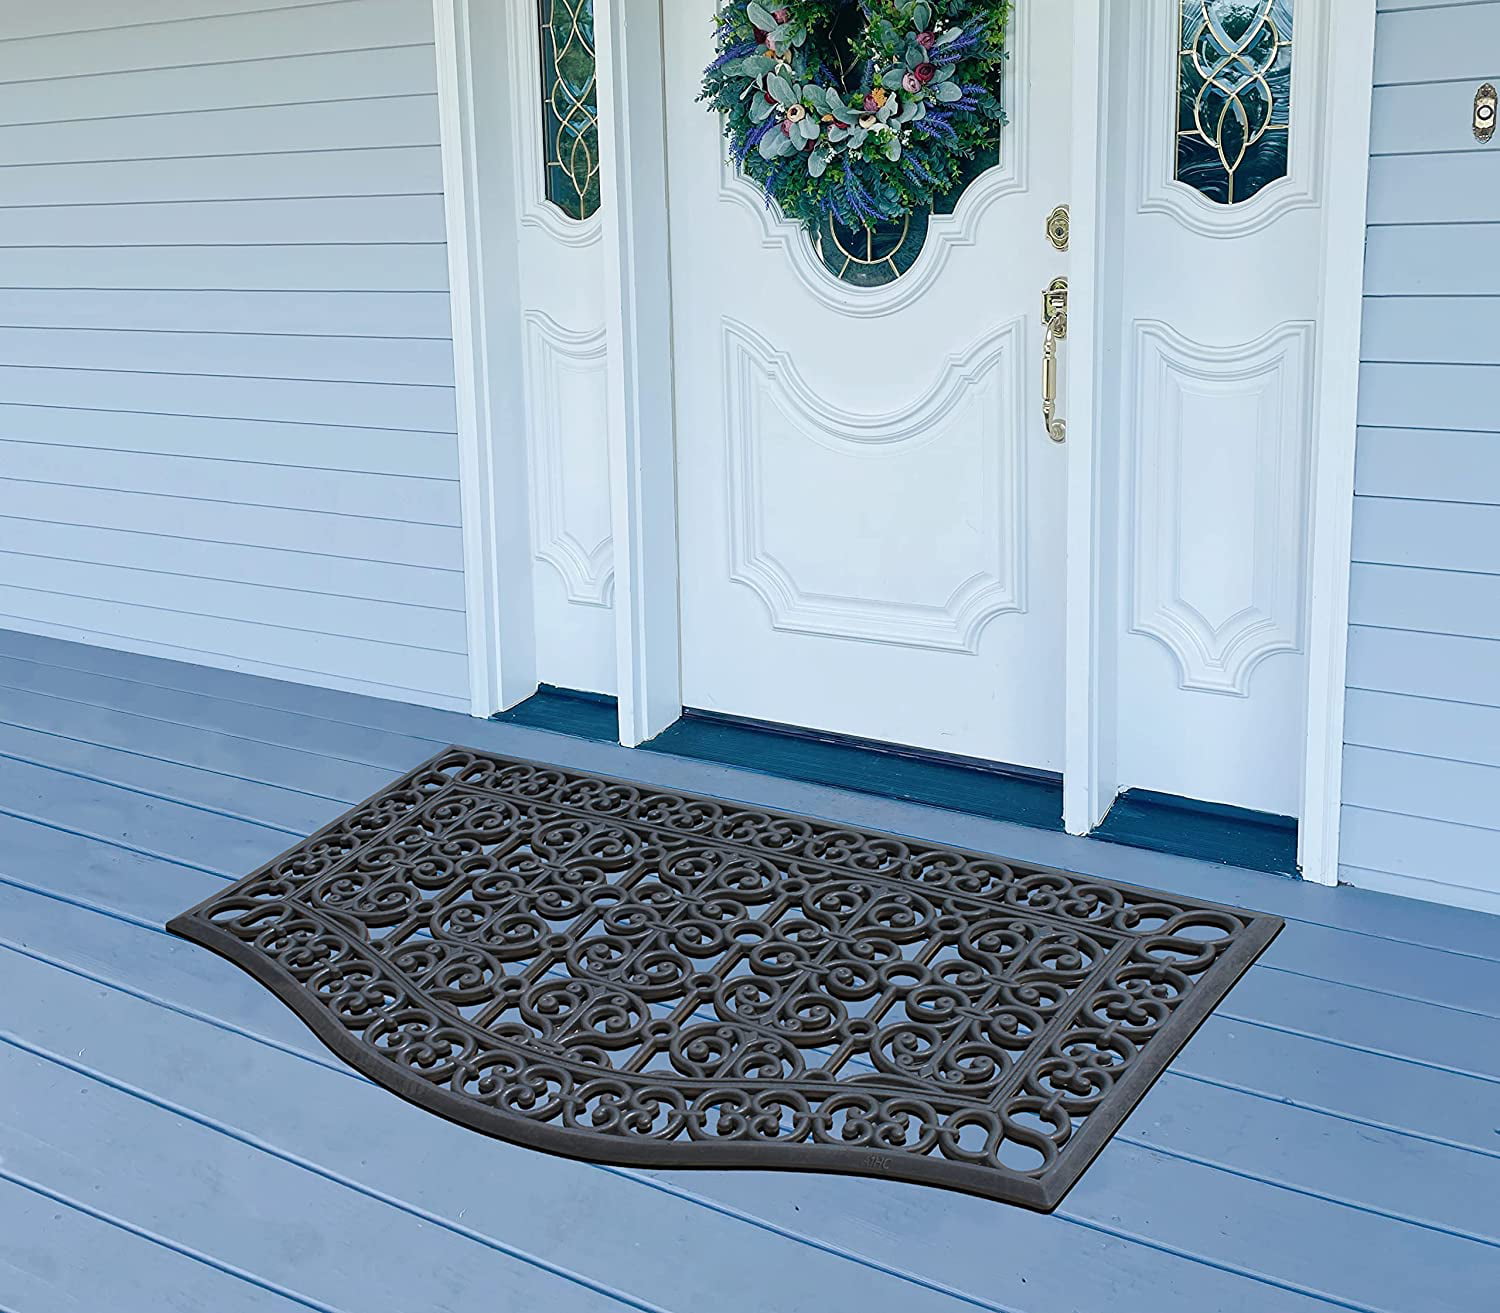 1pc Leaf Pattern Waterproof Door Mat, Modern Fabric Indoor Outdoor Rug For  Home